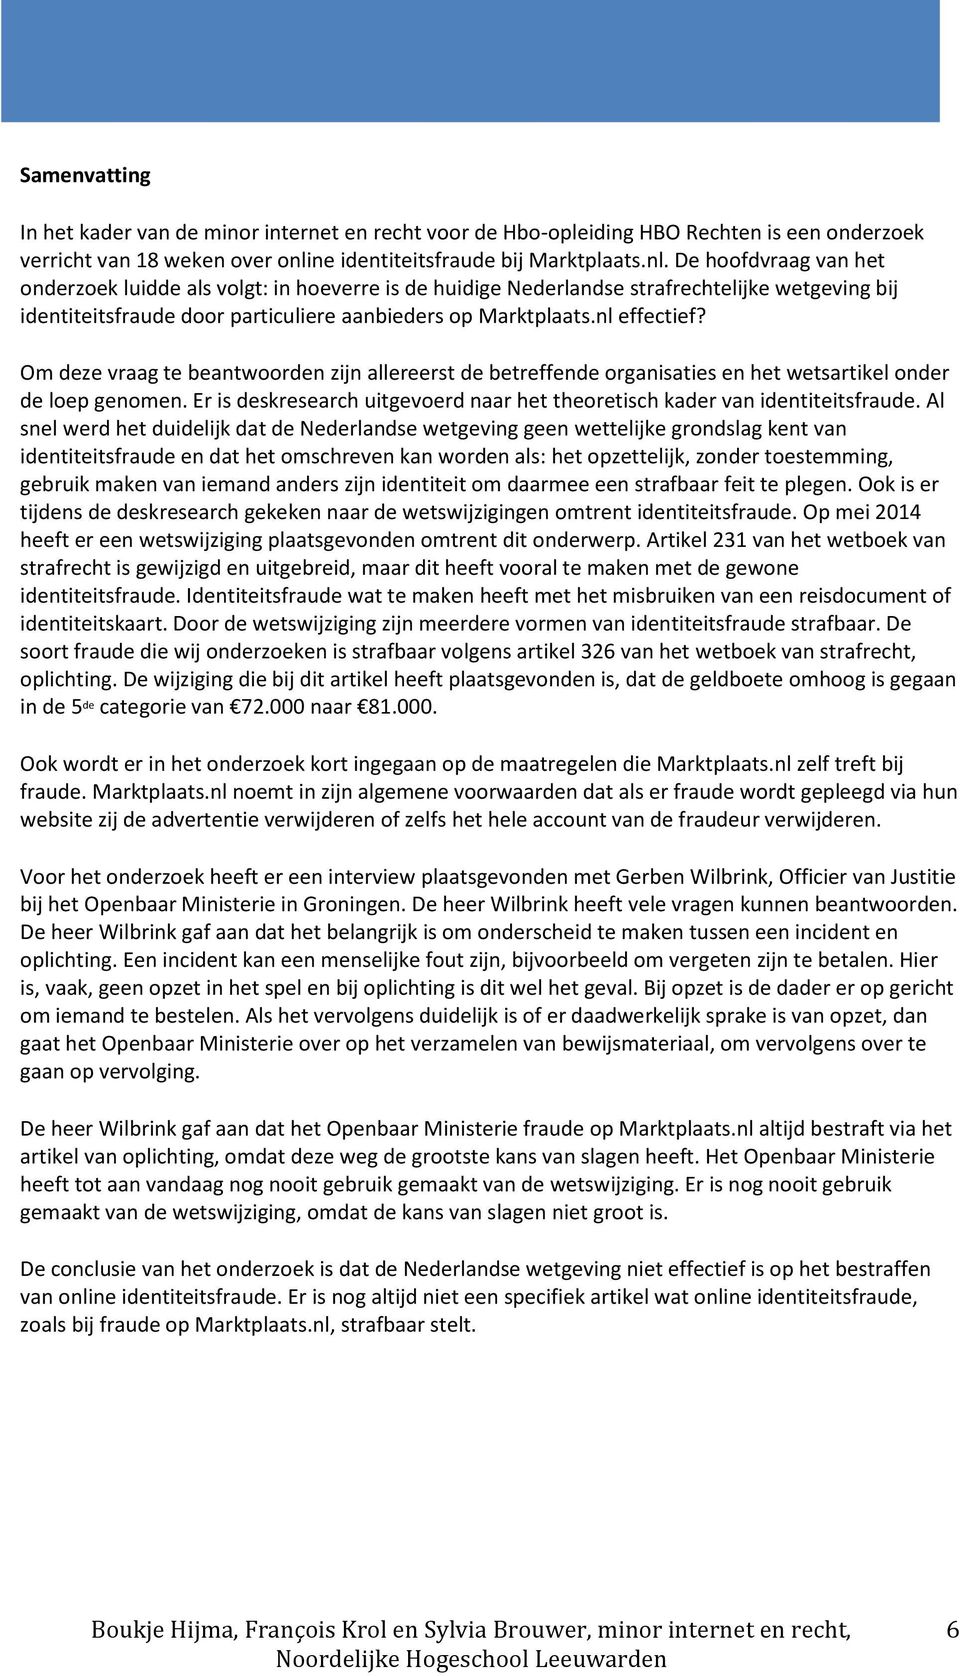 De hoofdvraag van het onderzoek luidde als volgt: in hoeverre is de huidige Nederlandse strafrechtelijke wetgeving bij identiteitsfraude door particuliere aanbieders op Marktplaats.nl effectief?